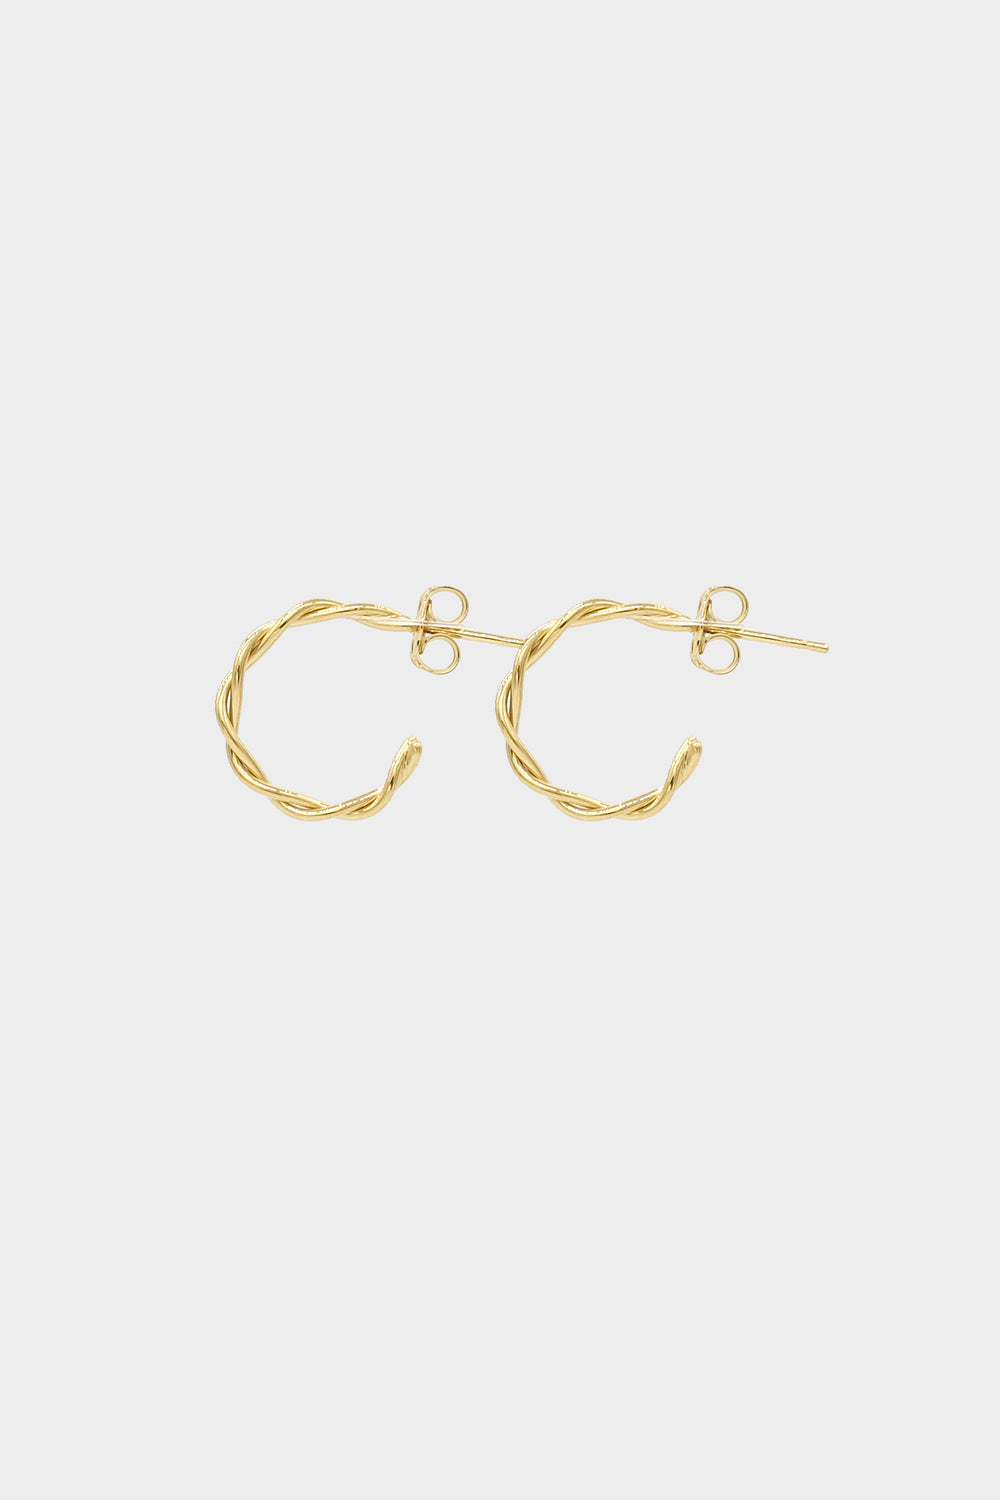 Helix Earrings Small | 9K Yellow Gold| Natasha Schweitzer